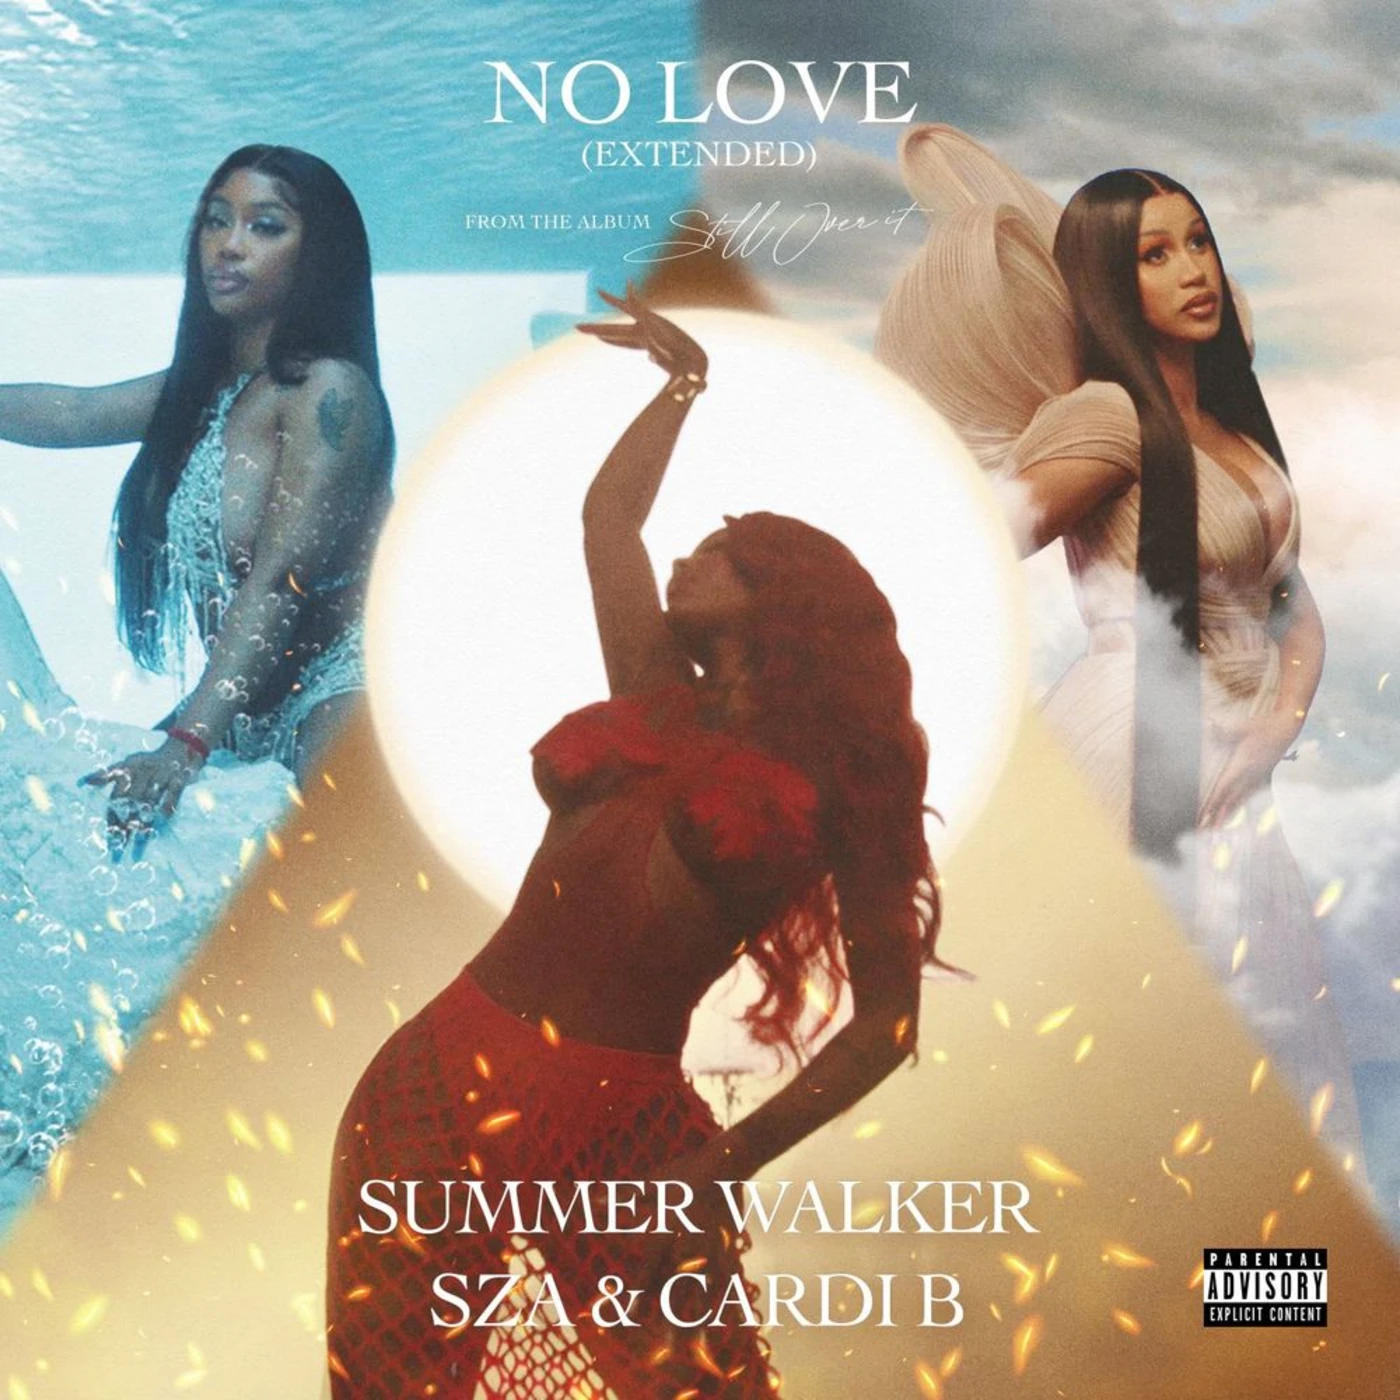 Cardi B Hops On Summer Walker & SZA’s “No Love”